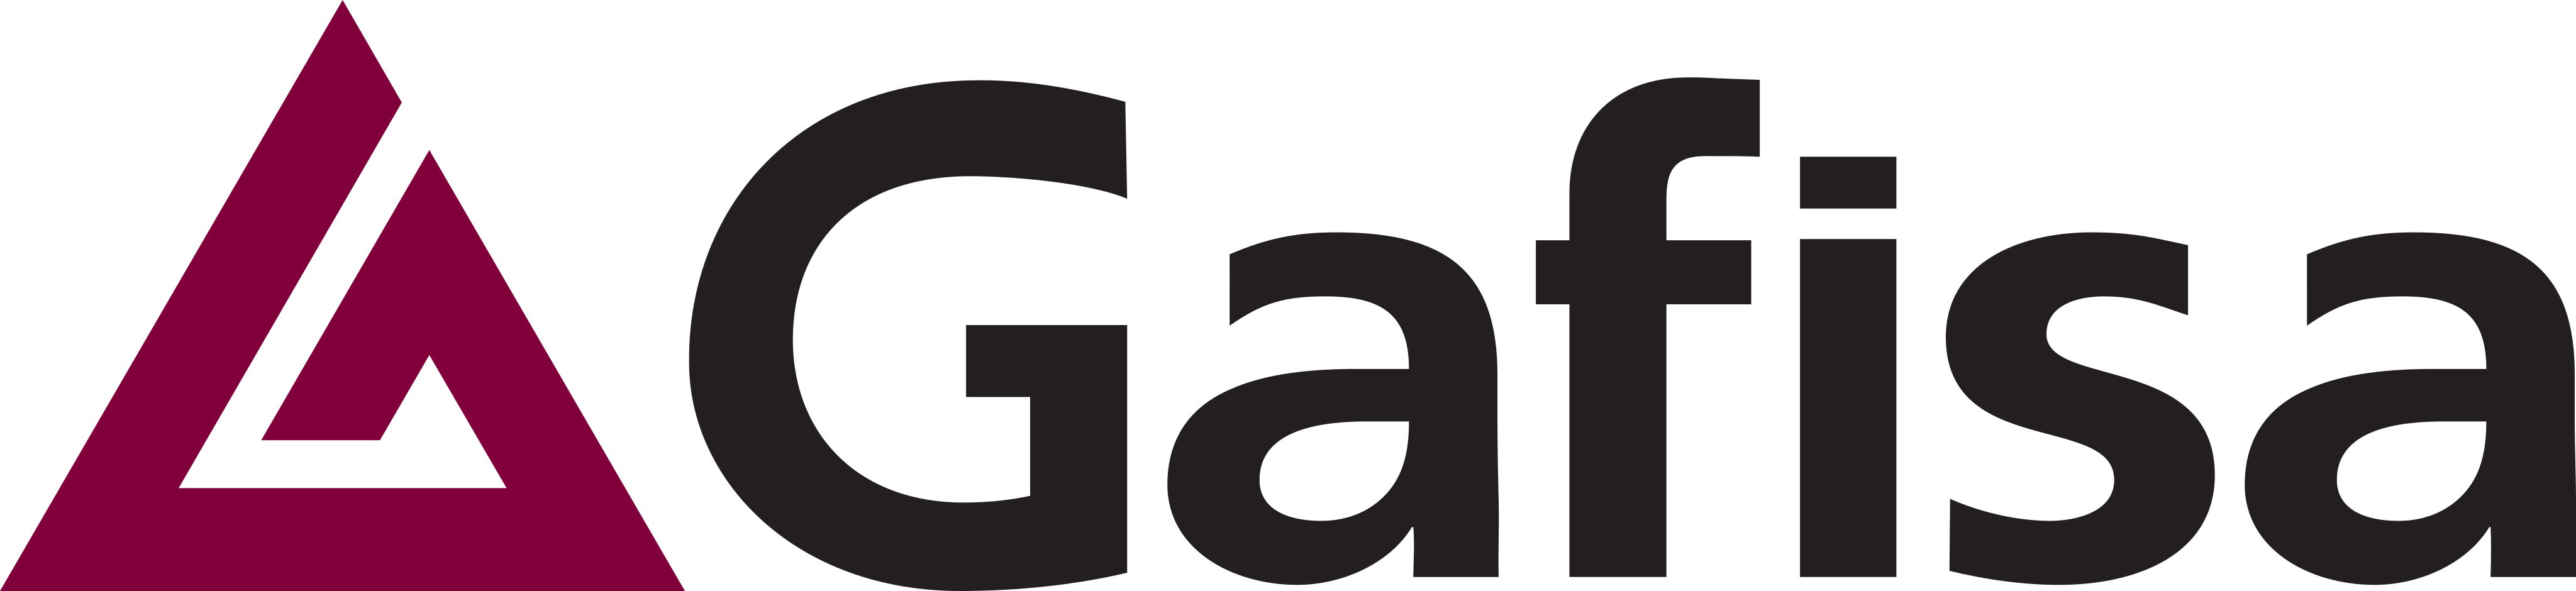 Logo Gafisa